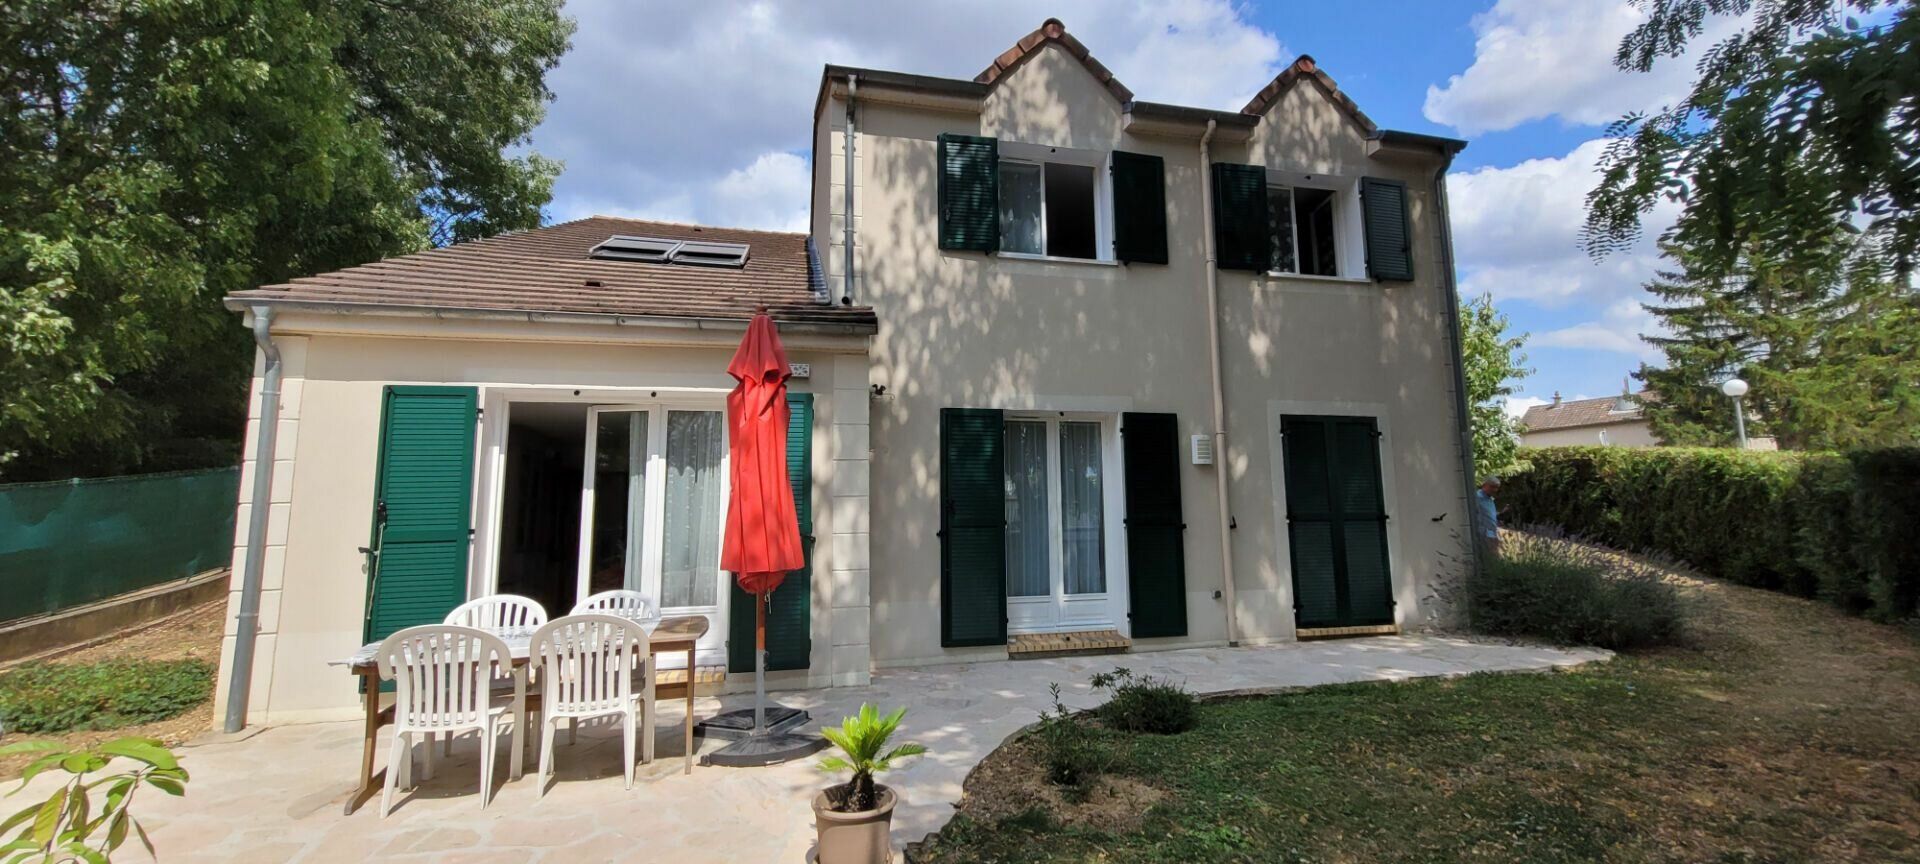 Maison à vendre 6 182.5m2 à Boussy-Saint-Antoine vignette-1